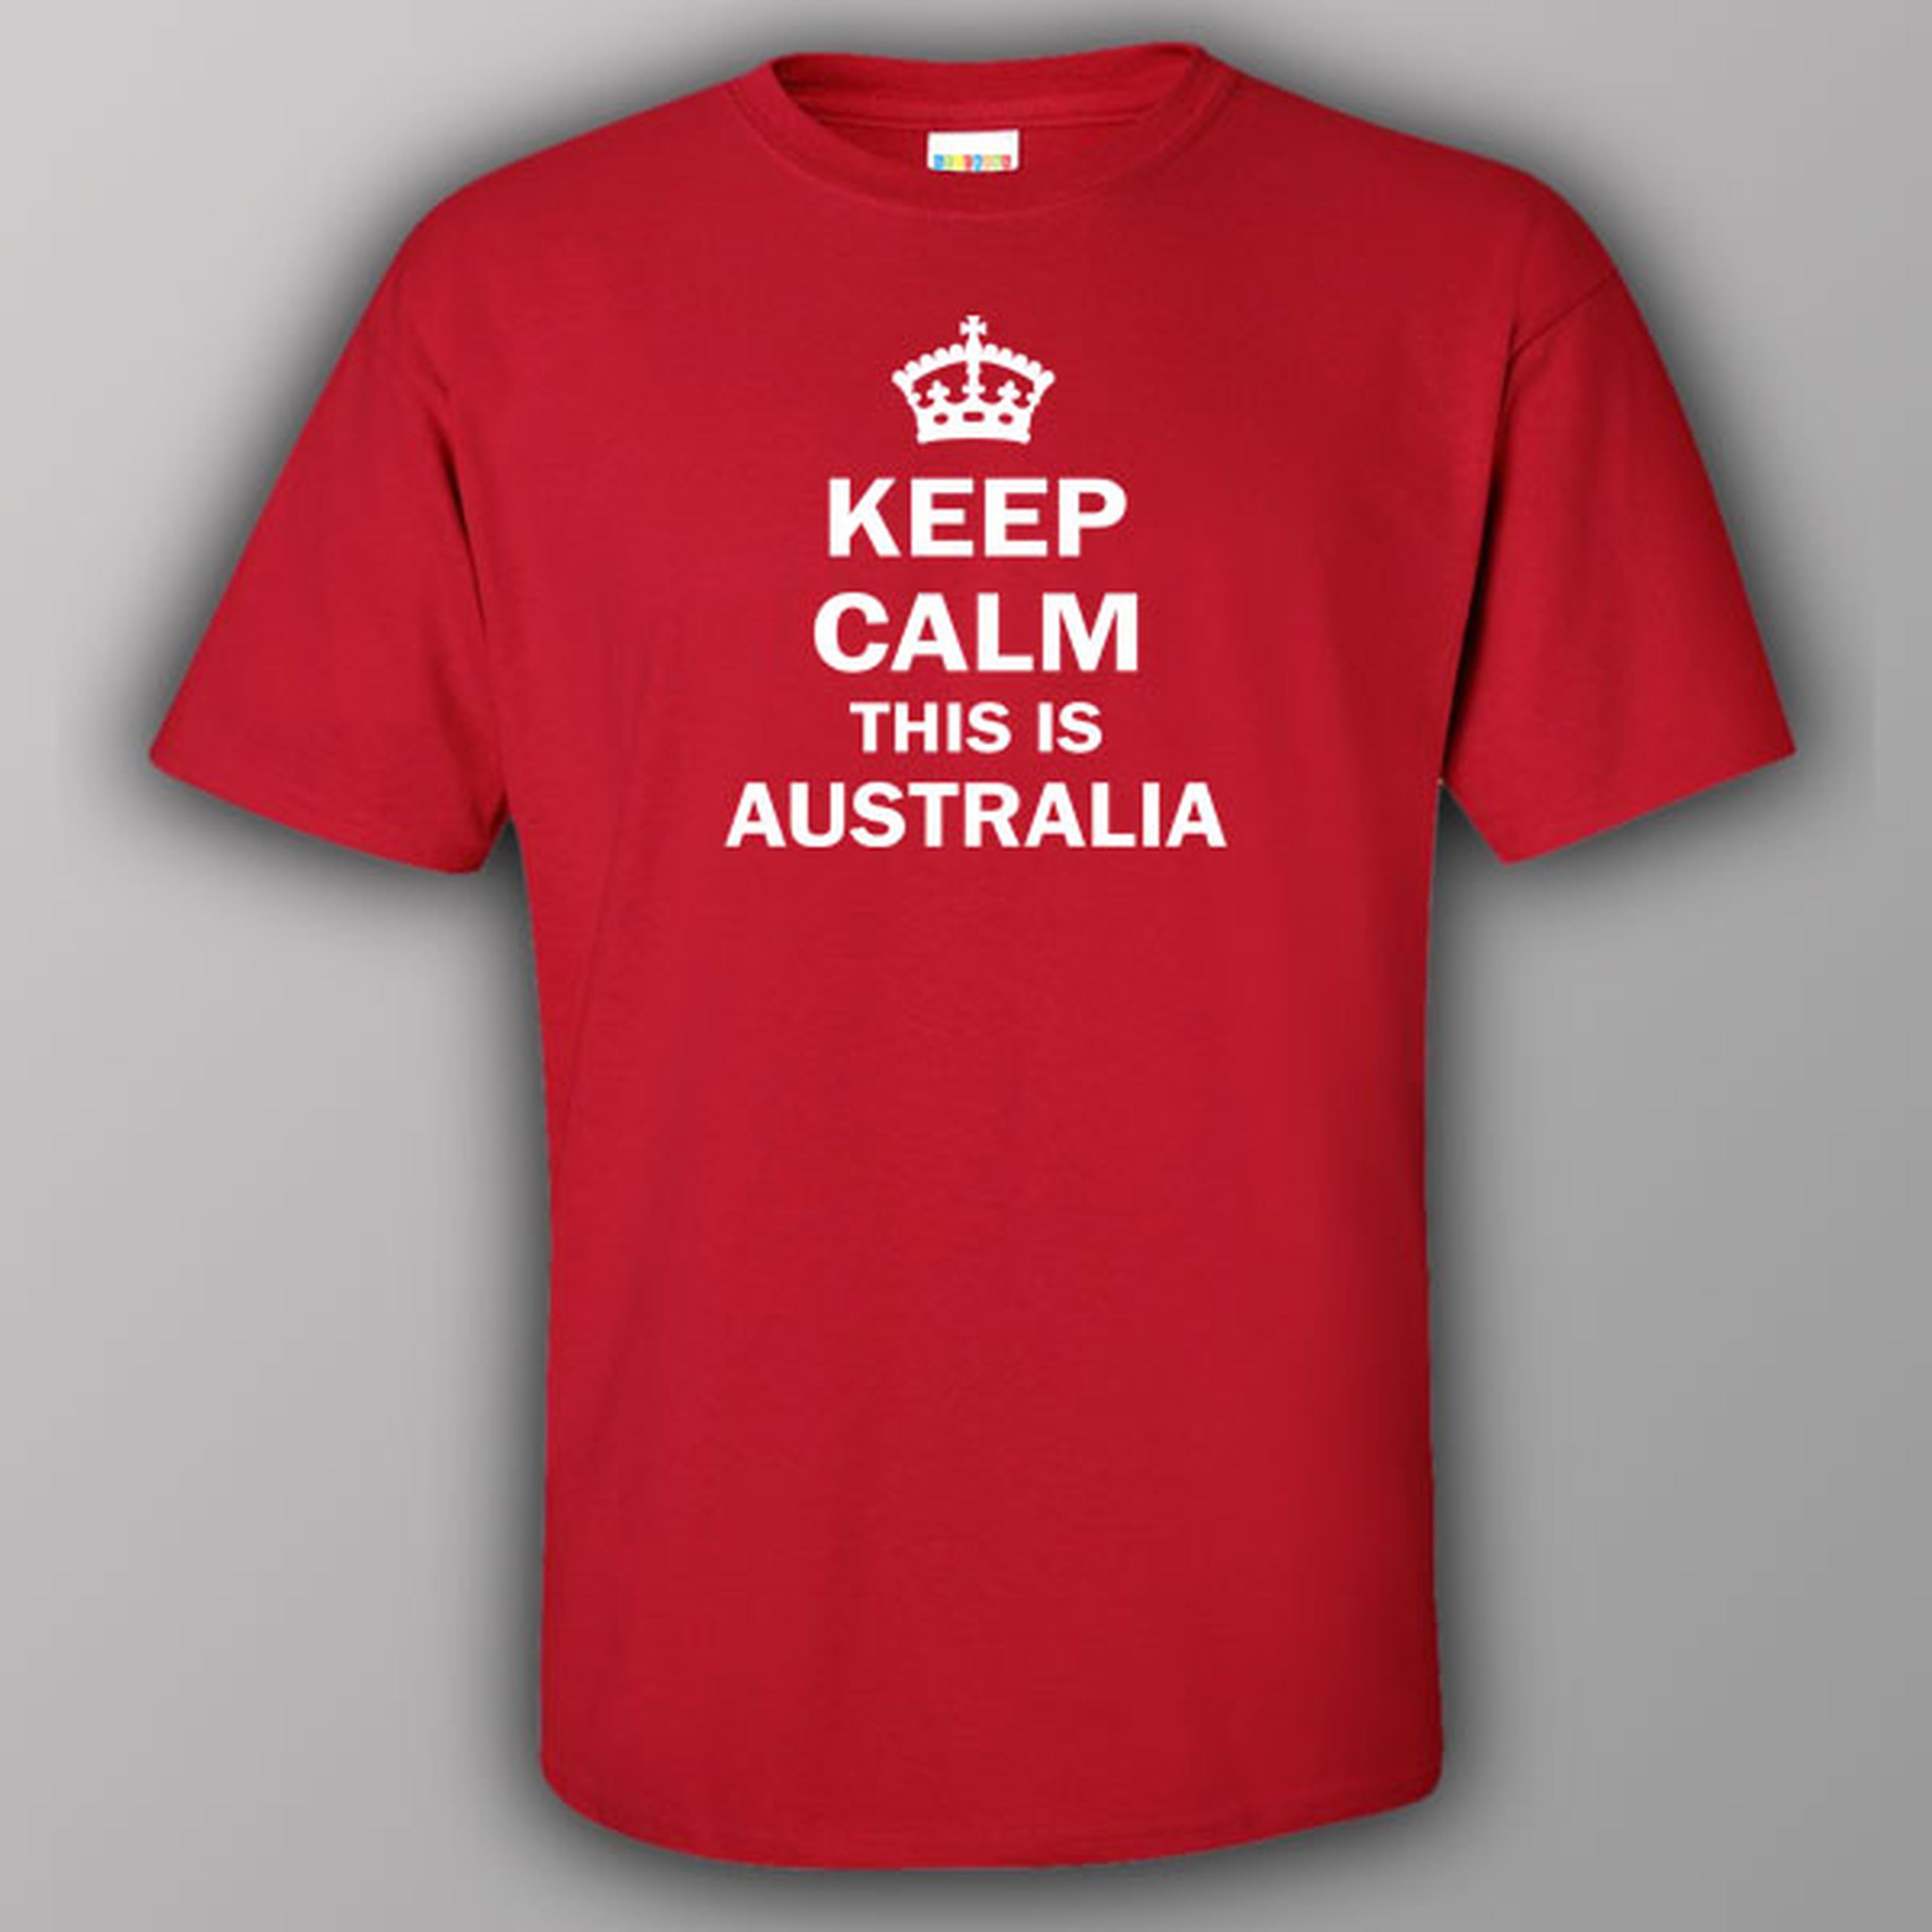 Keep calm this is Australia - T-shirt